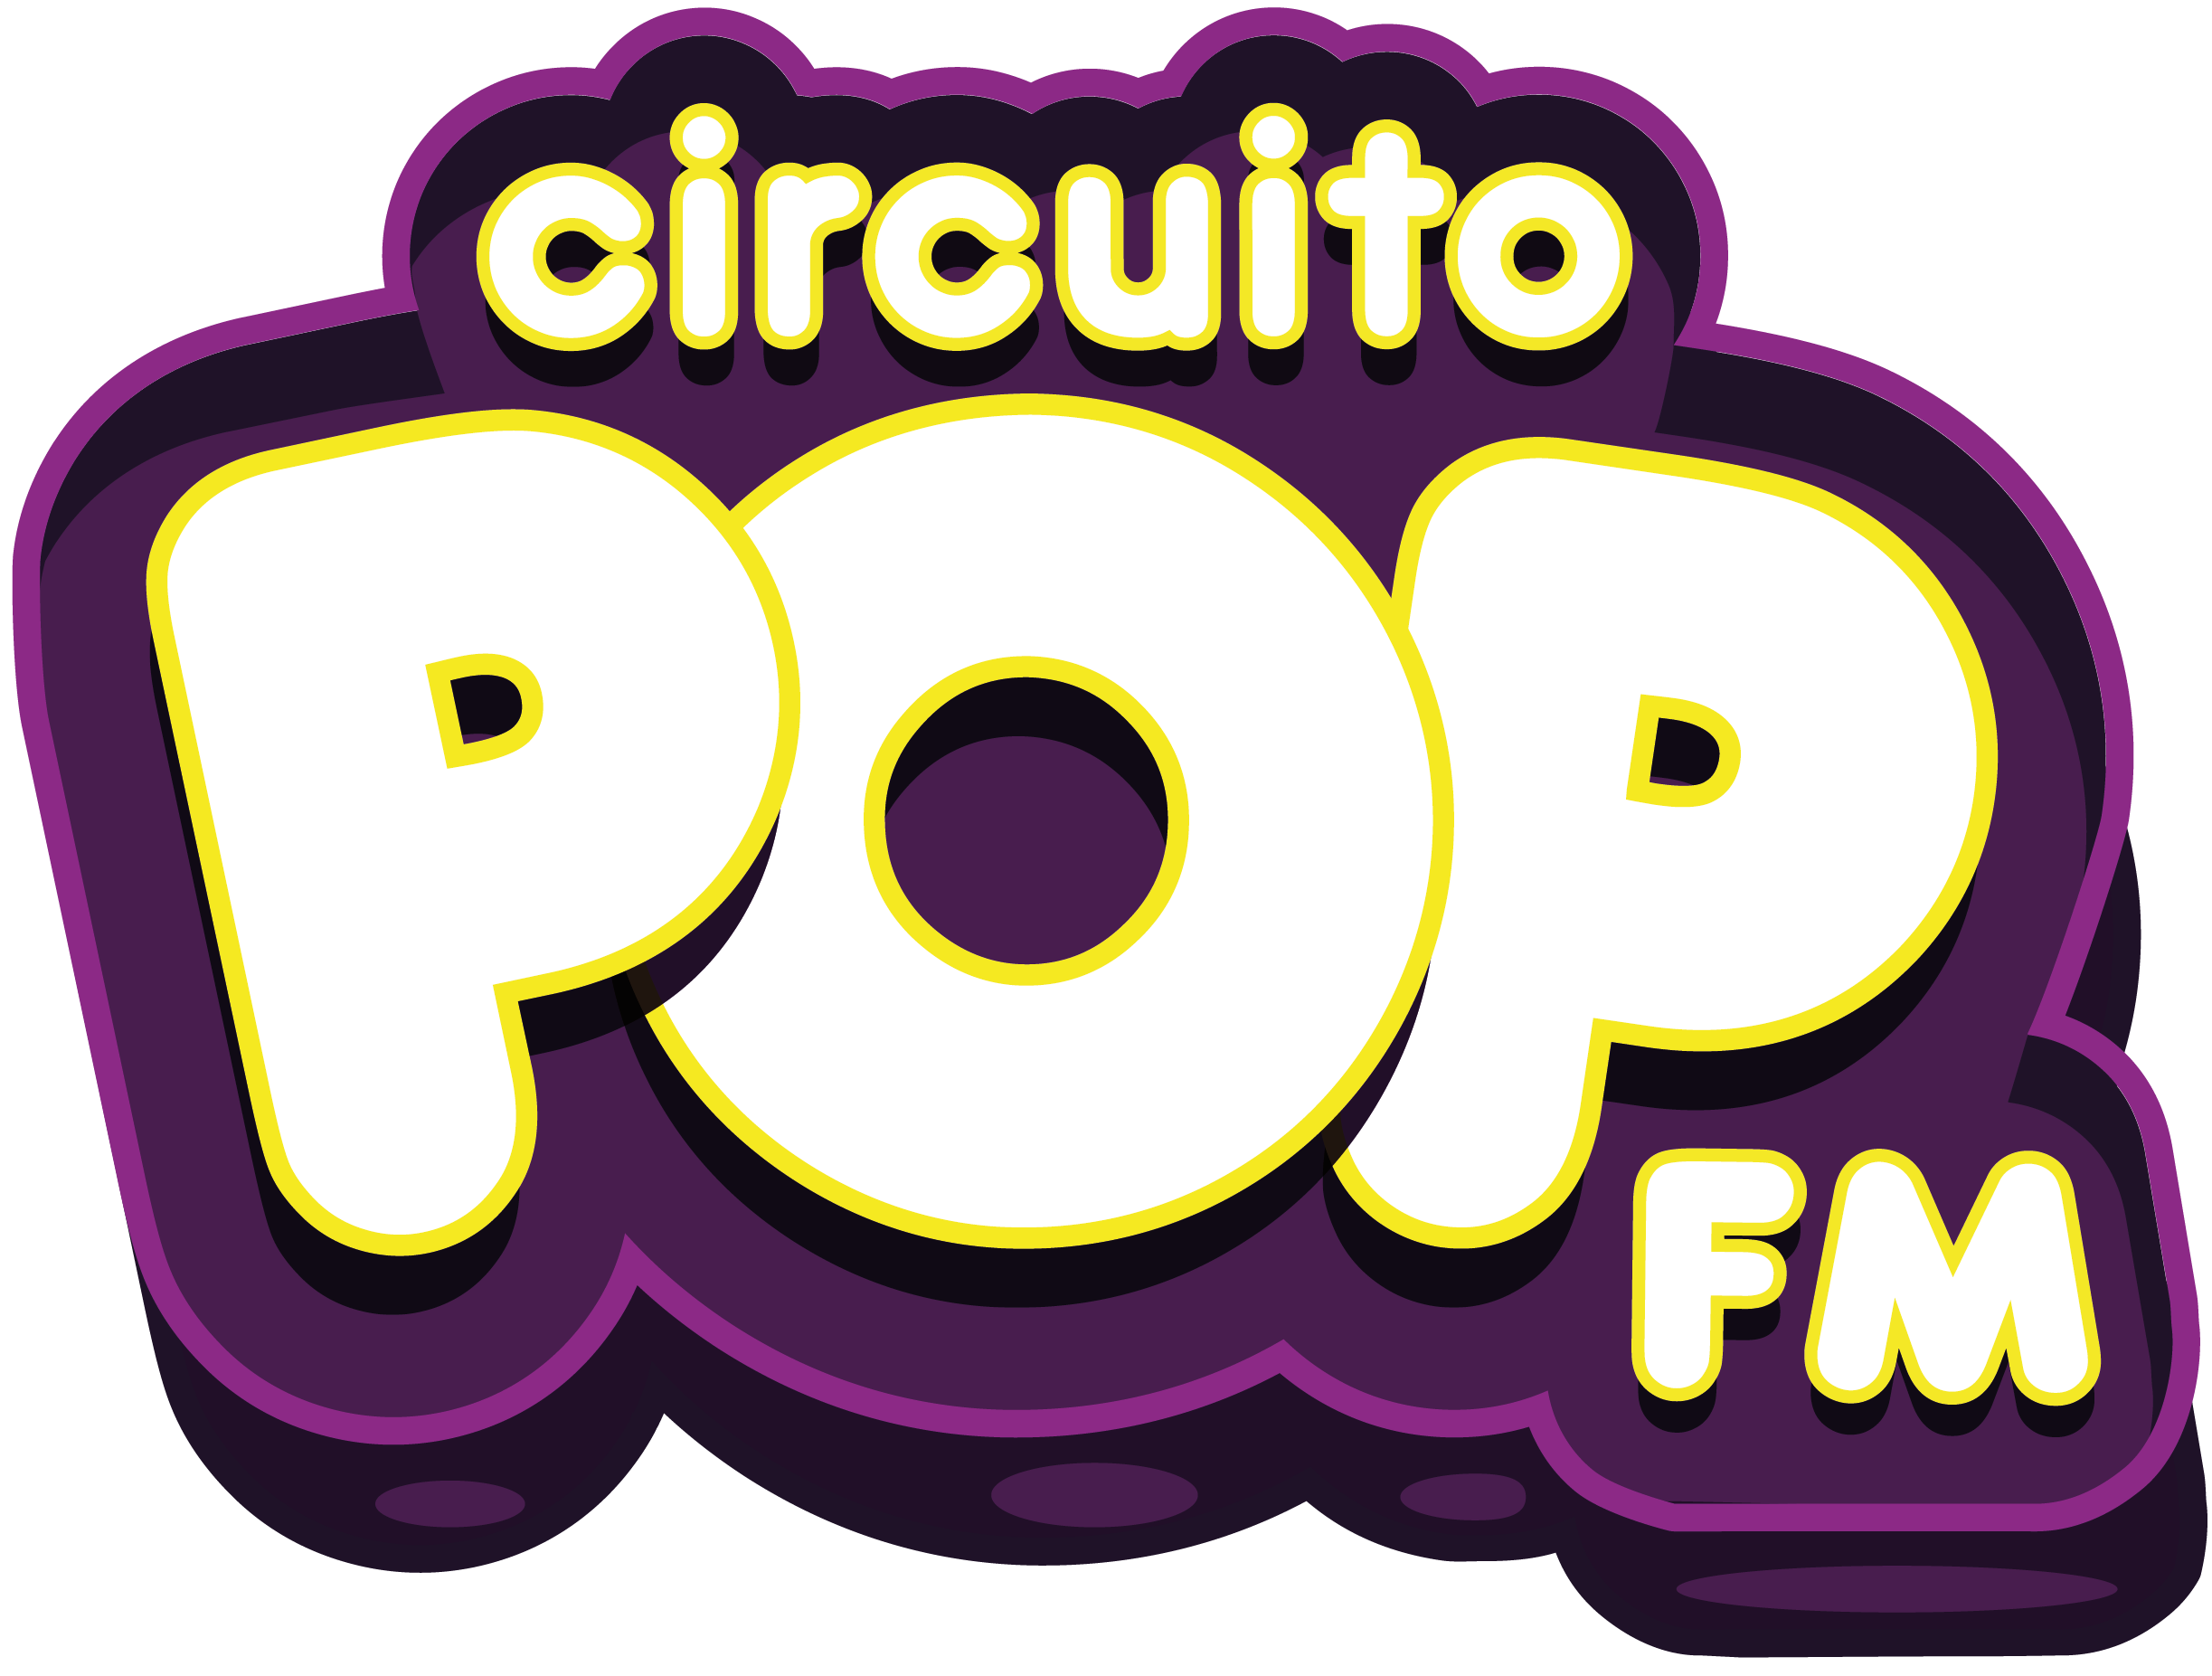 CIRCUITO POP TV LOGO